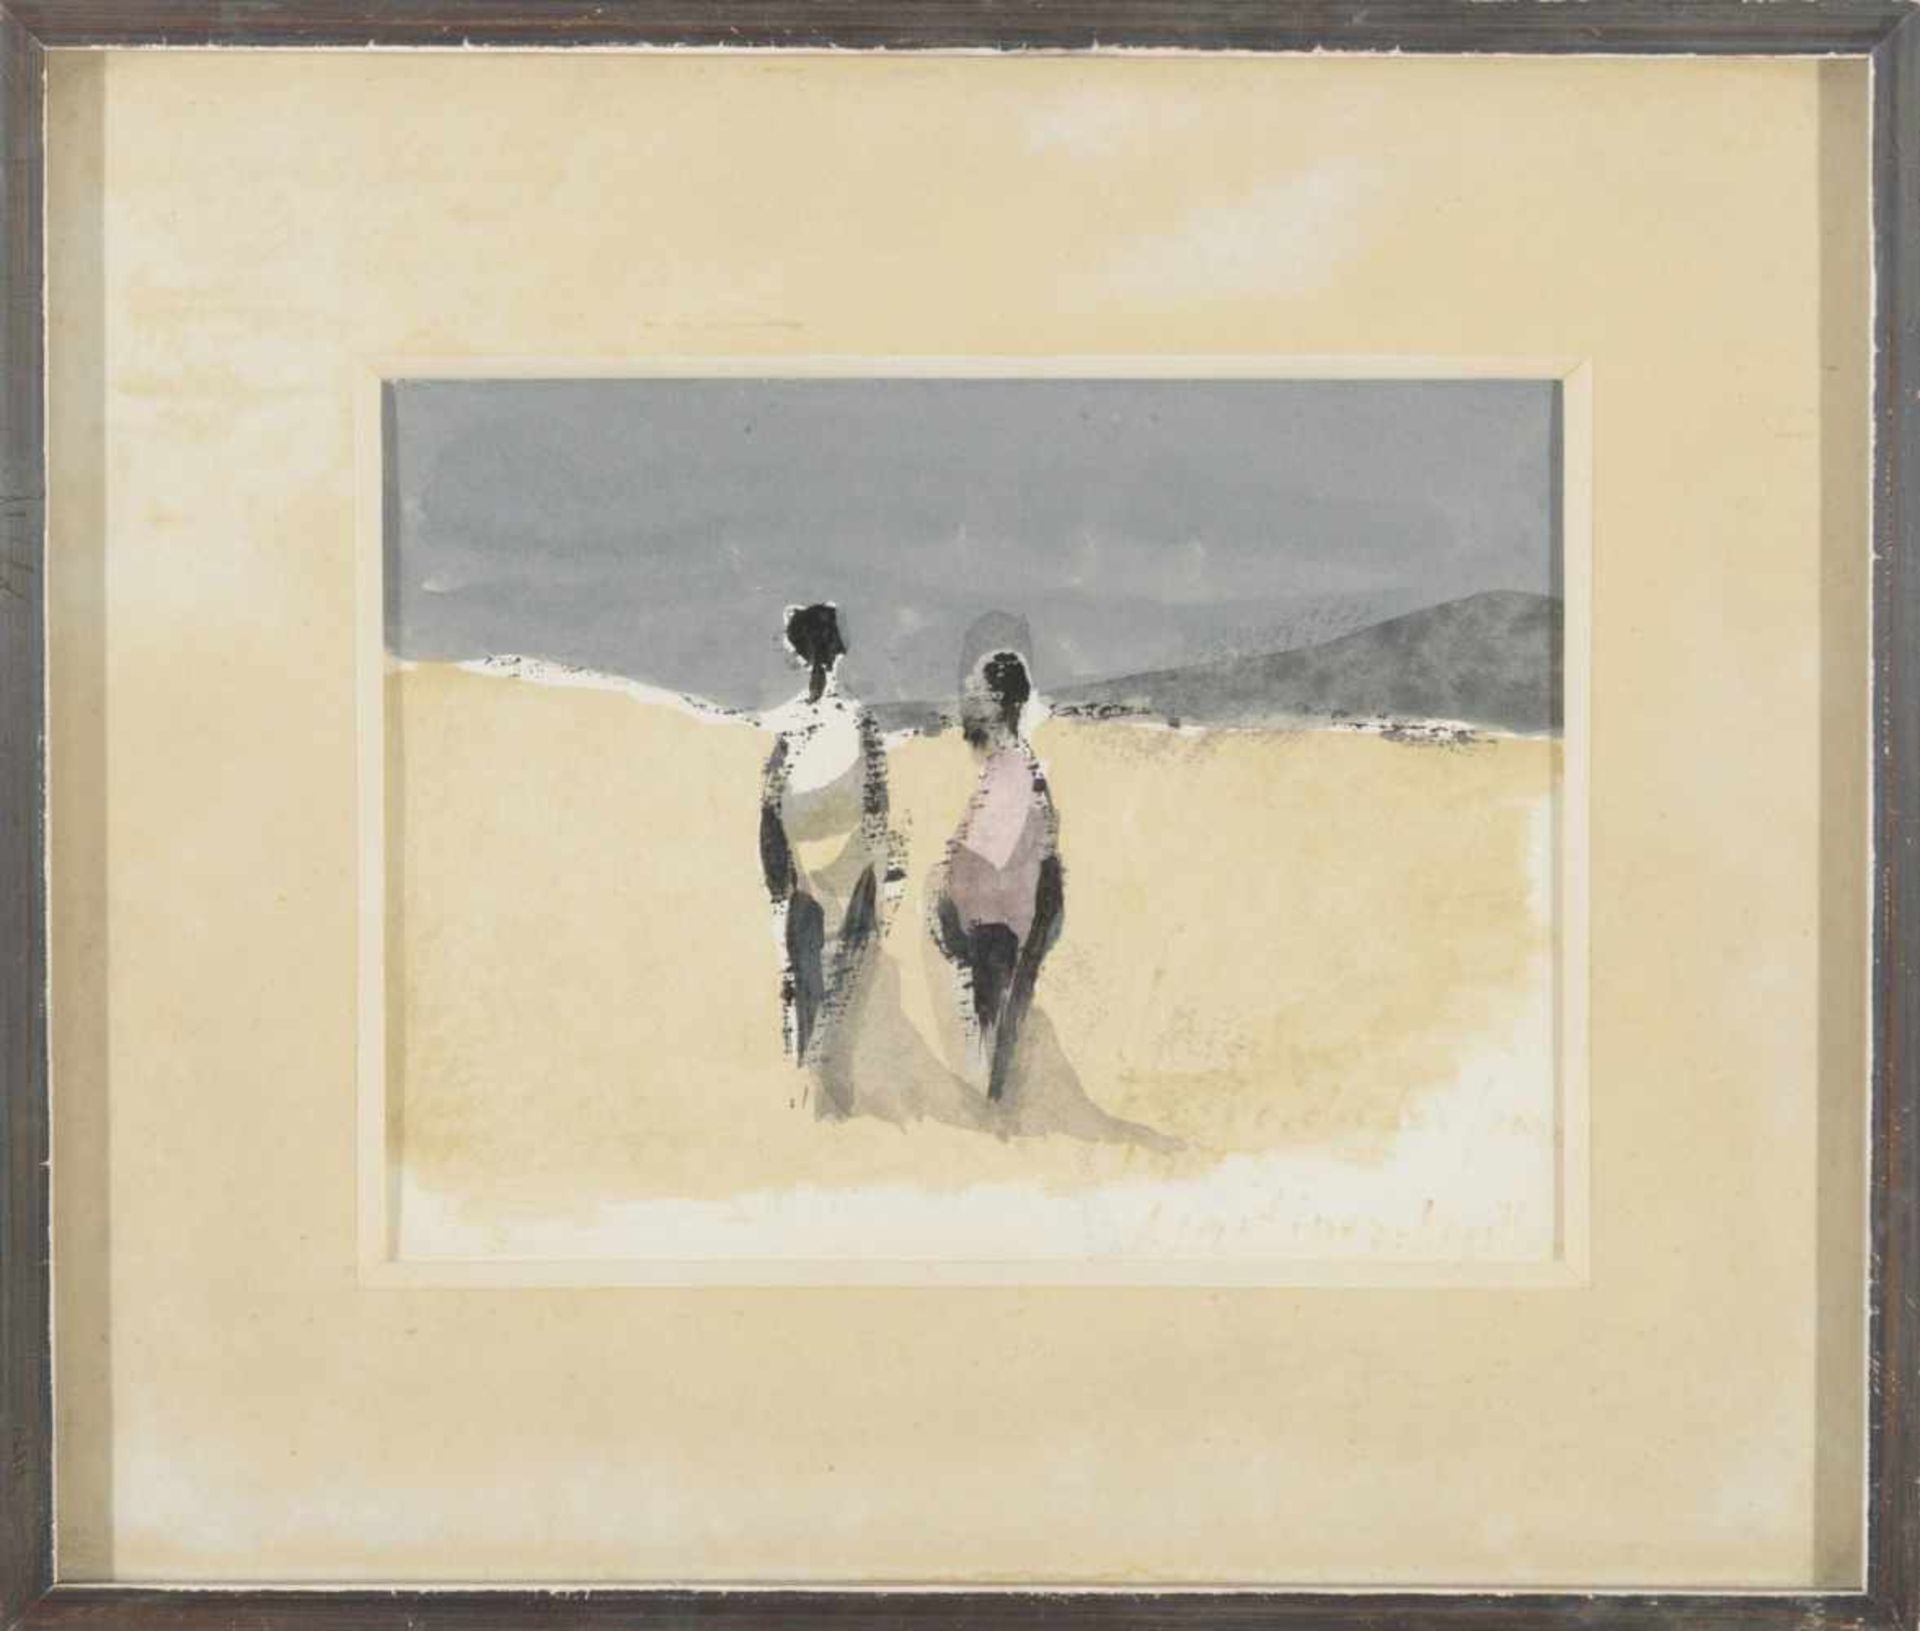 CIRILO MARTÍNEZ NOVILLO (Madrid, 1921 - 2008) Pareja en la playa Acuarela sobre papel de 14´5 x 19